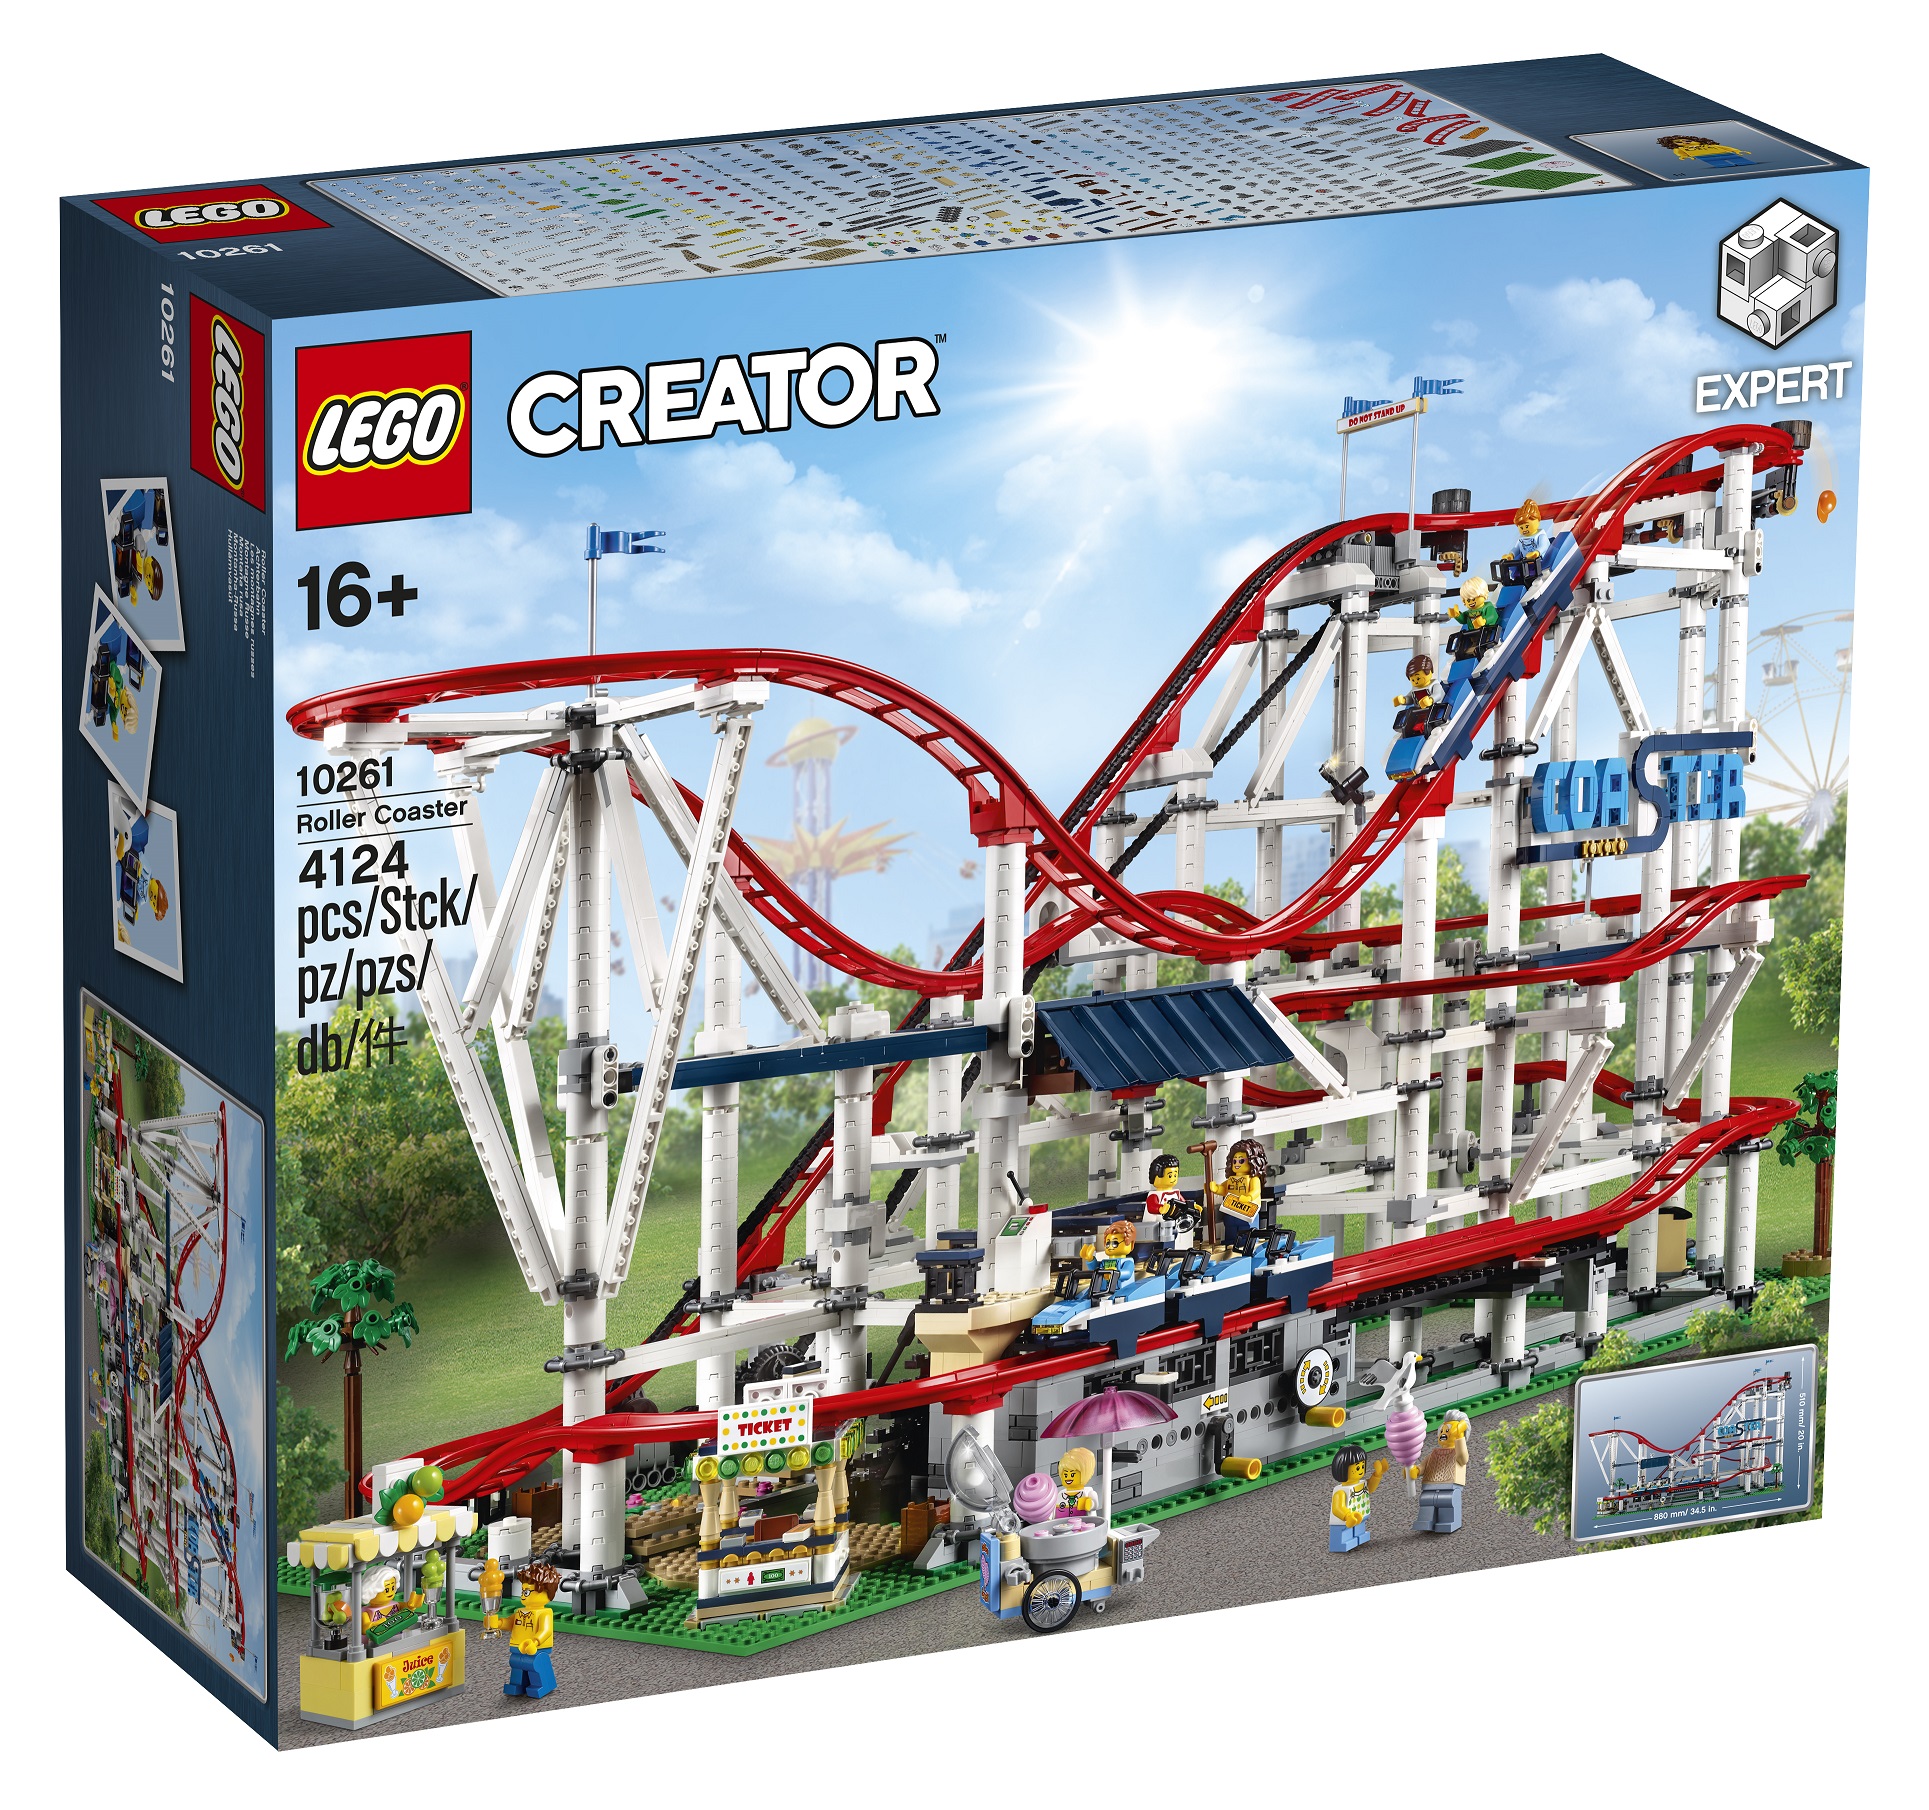 LEGO announces 10261 Creator Expert Roller Coaster!